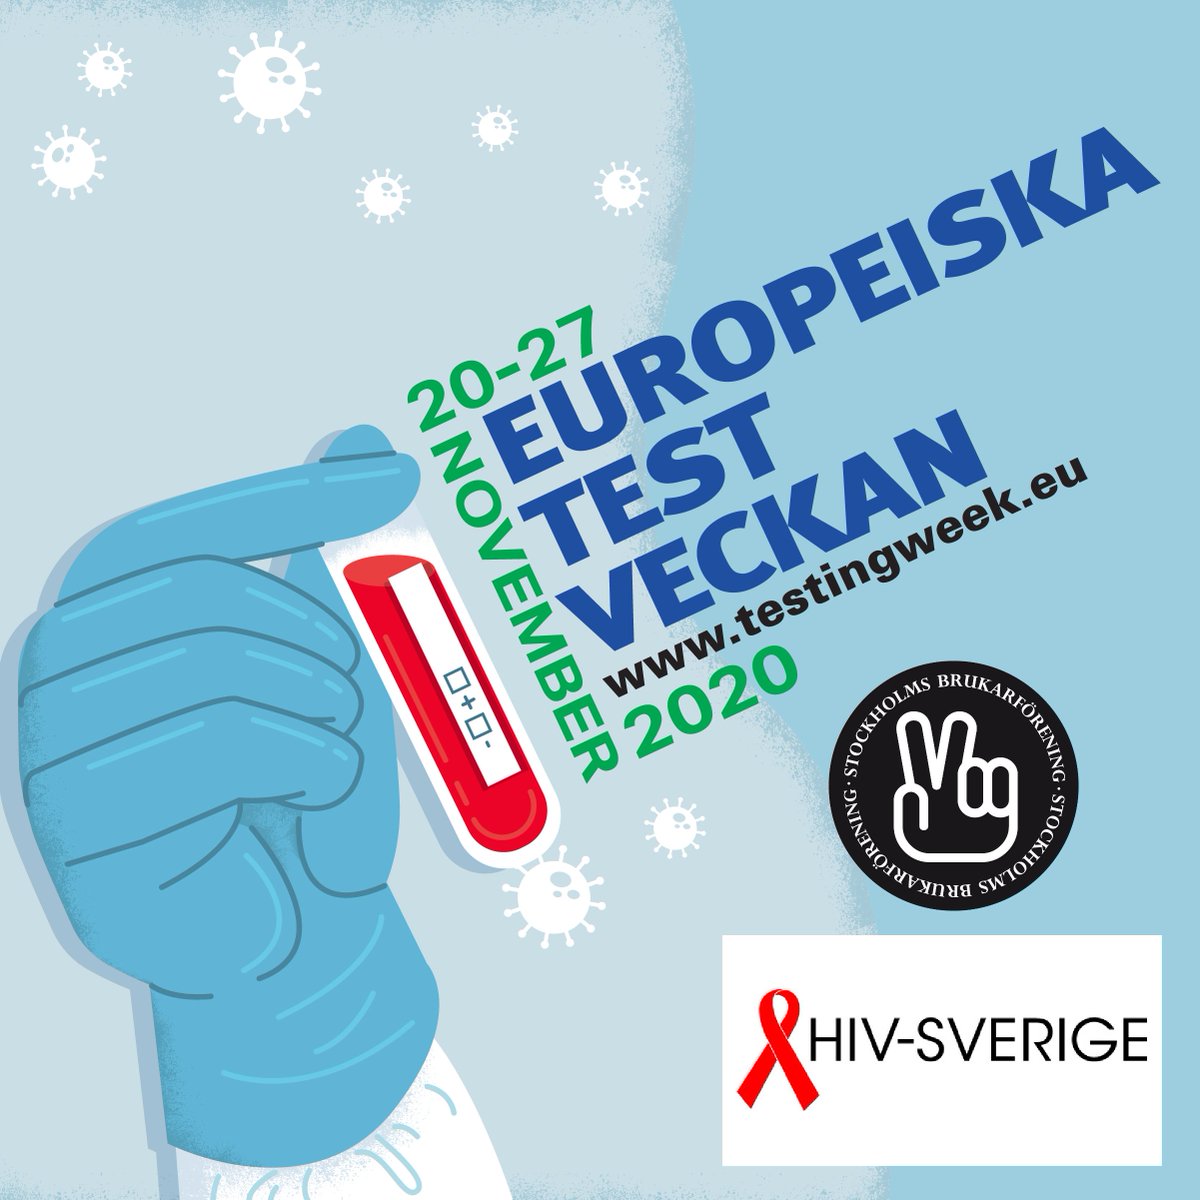 Idag inleds #EuroTestWeek.

Syftet är att uppmuntra t testning för hiv, hepatiter & sexuellt överförbara infektioner, & samtidigt öka kunskapen om fördelarna med tidig testning

Kom förbi och ställ frågor!

Du kan även testa dig hos oss varje onsdag eftermiddag

#TestTreatPrevent